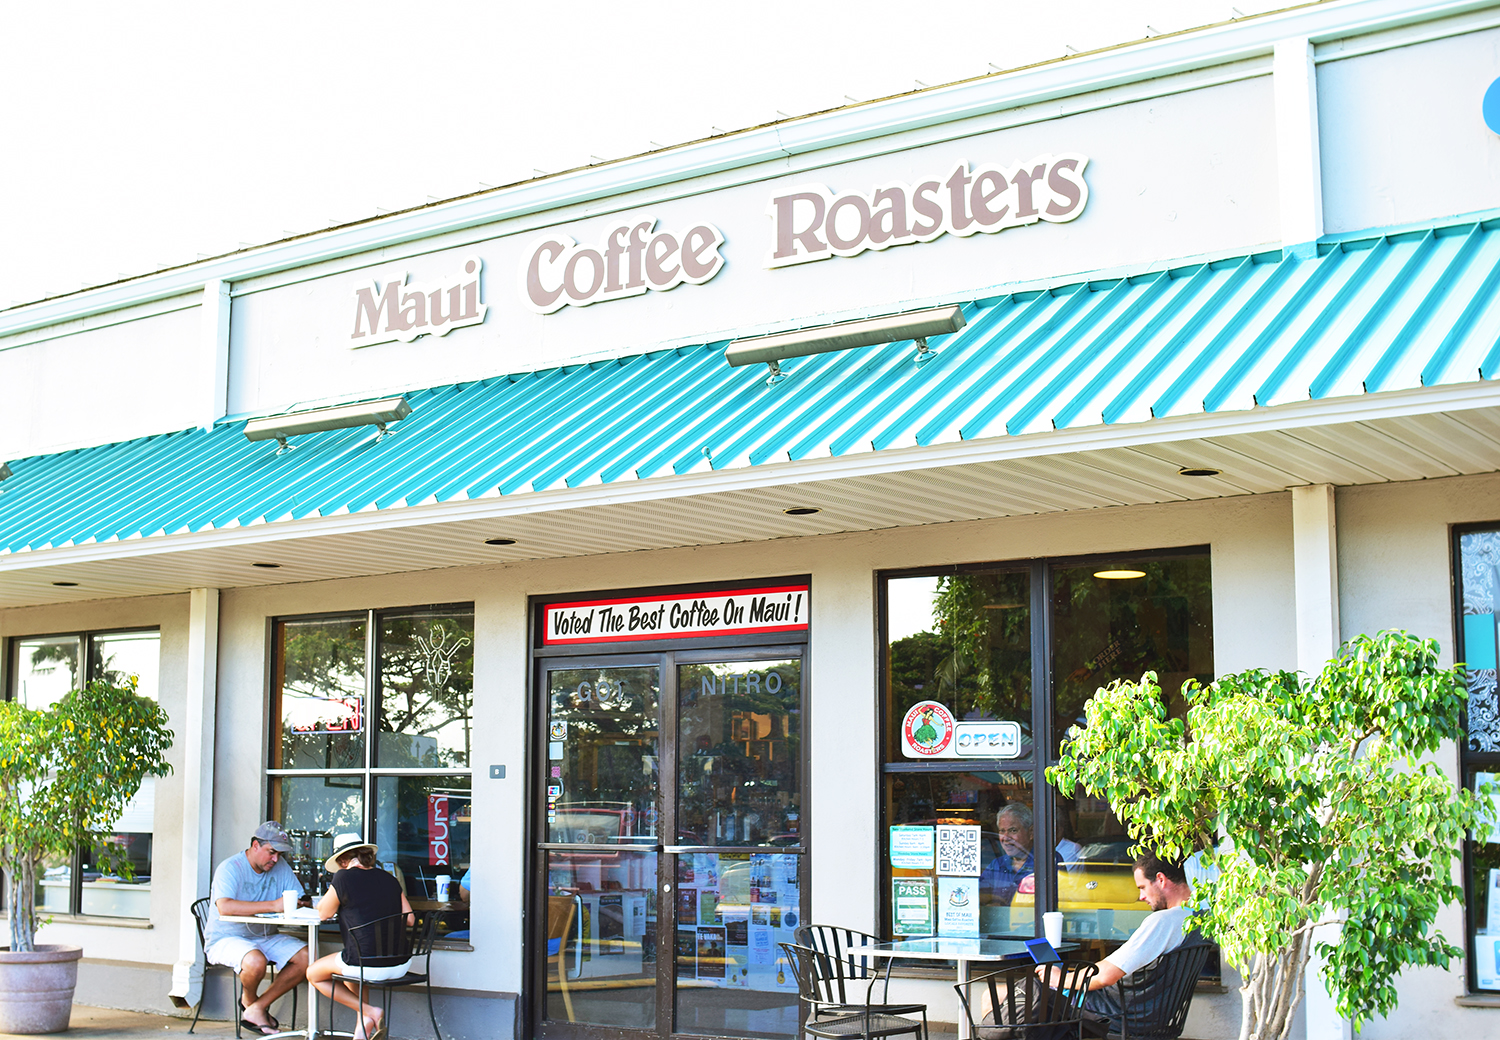 マウイ島でローカルに大人気のCoffee Shop『マウイ・コーヒー・ロースターズ』